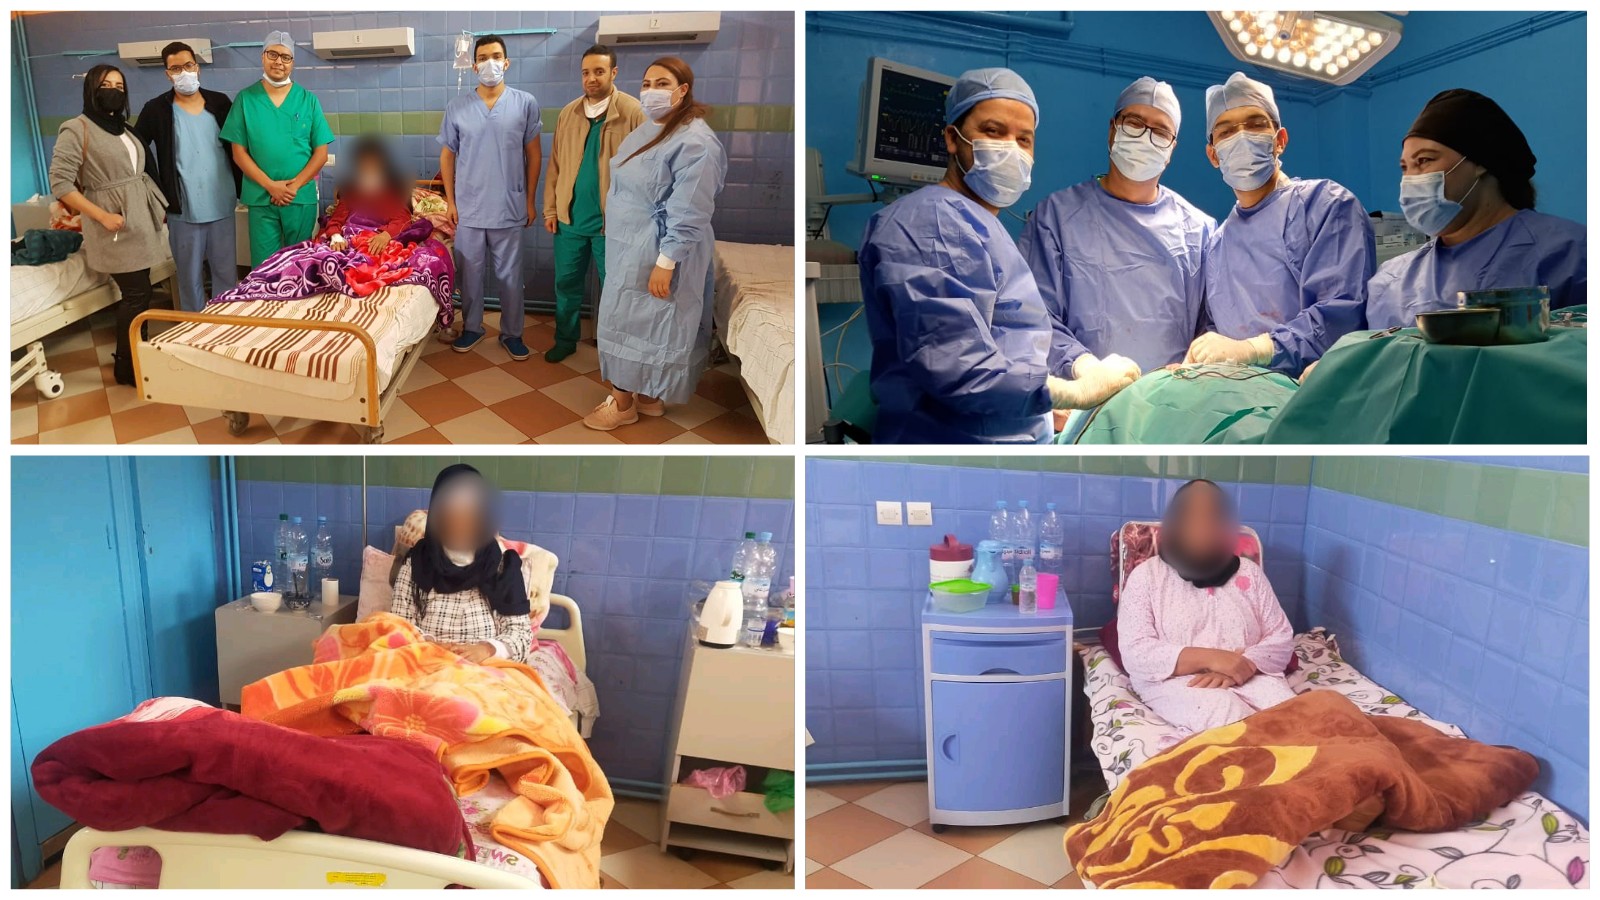 المستشفى الإقليمي بأزيلال يواصل حملاته الطبية لفائدة المواطنين وينظم حملة في جراحة الغدة الدرقية واللوزتين